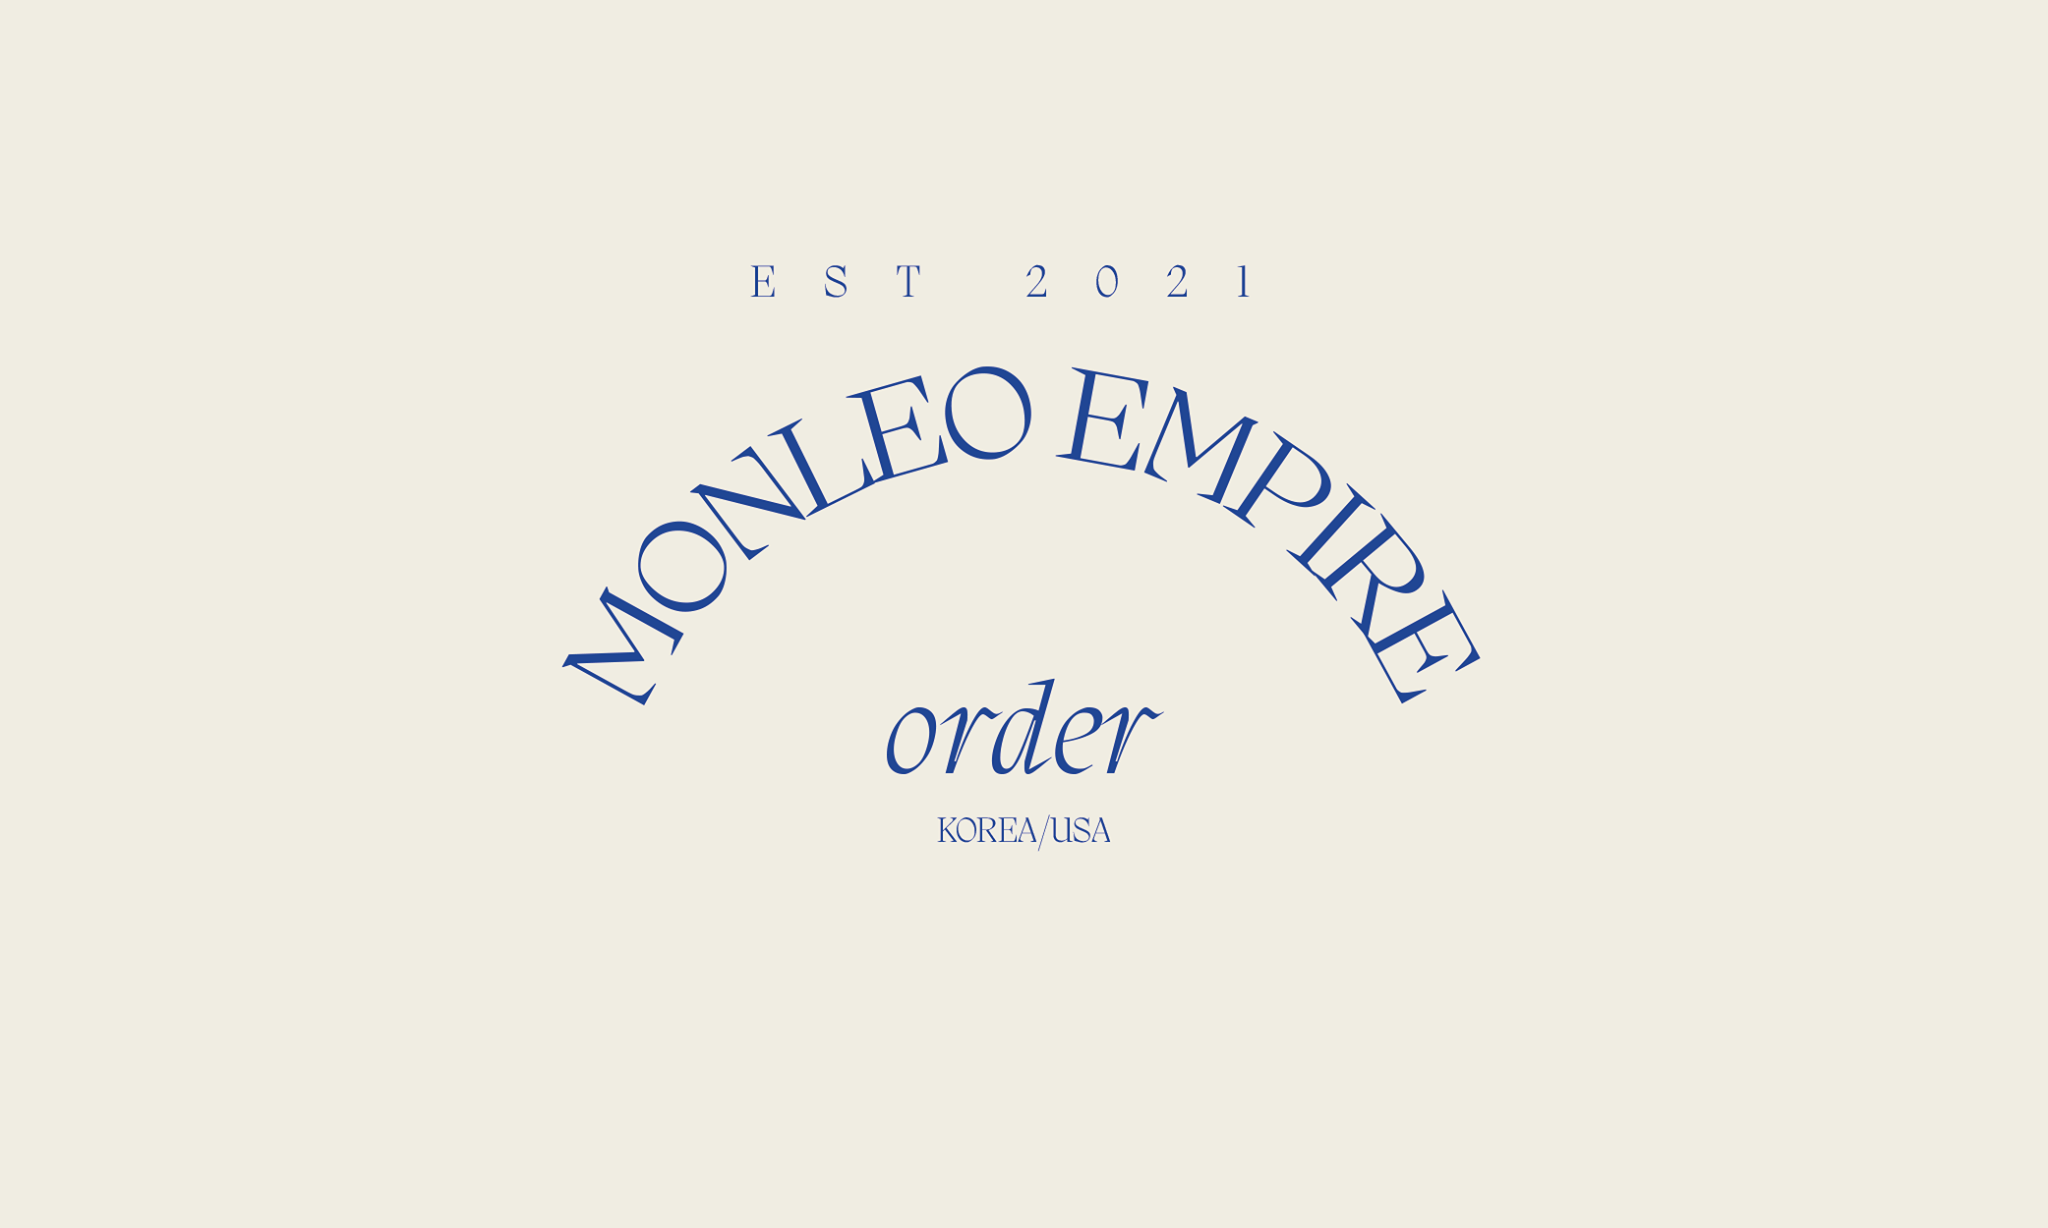 Monleo Empire